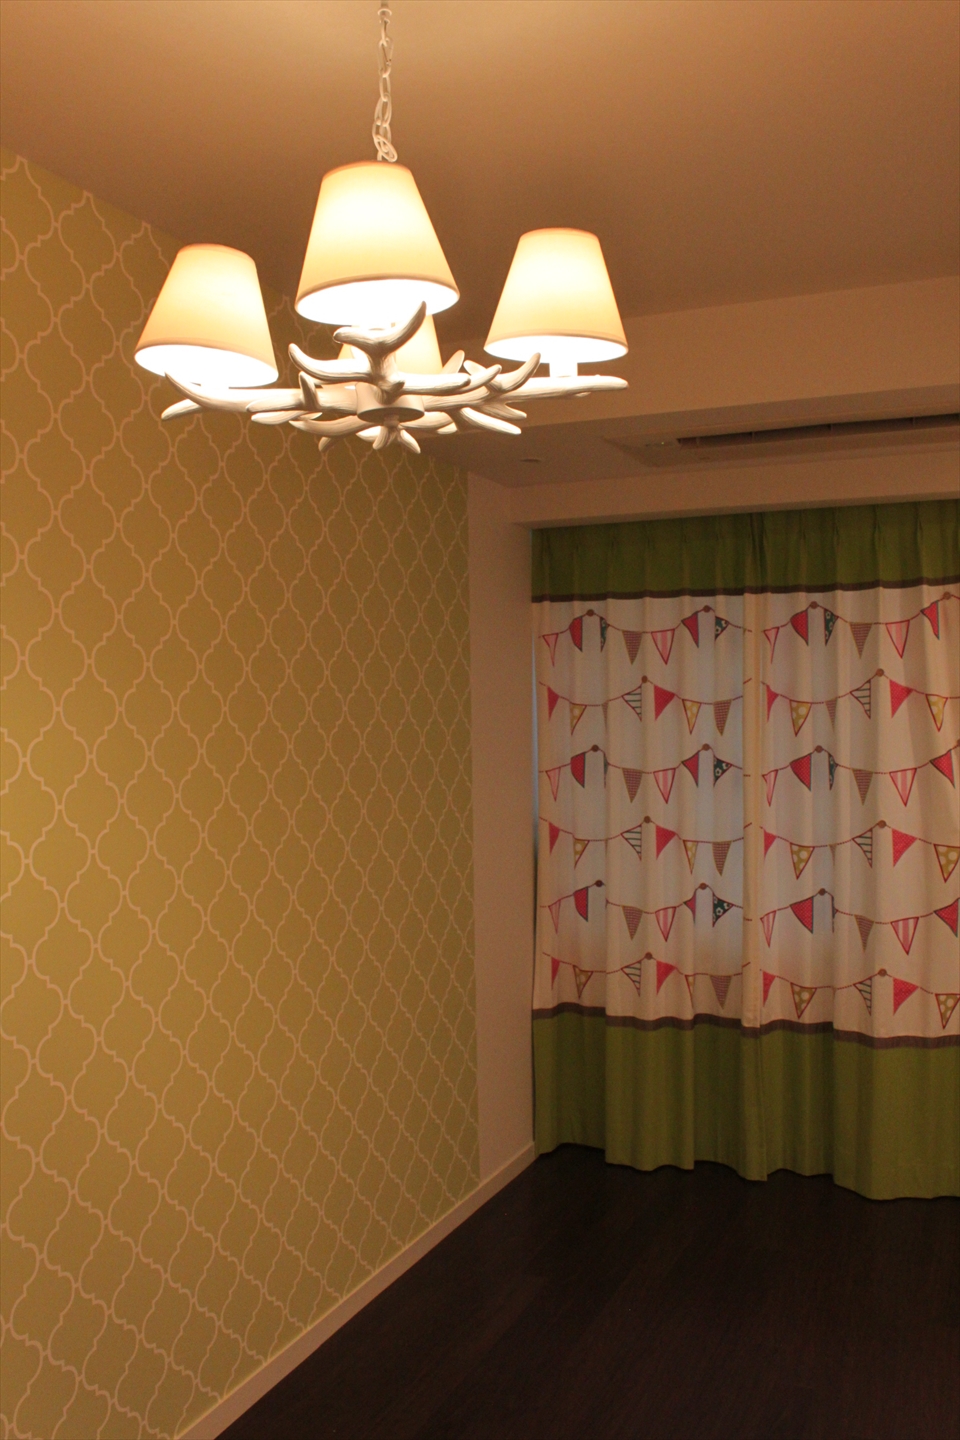 カーテン 壁紙と照明をコーディネートしたキッズルーム 東京や